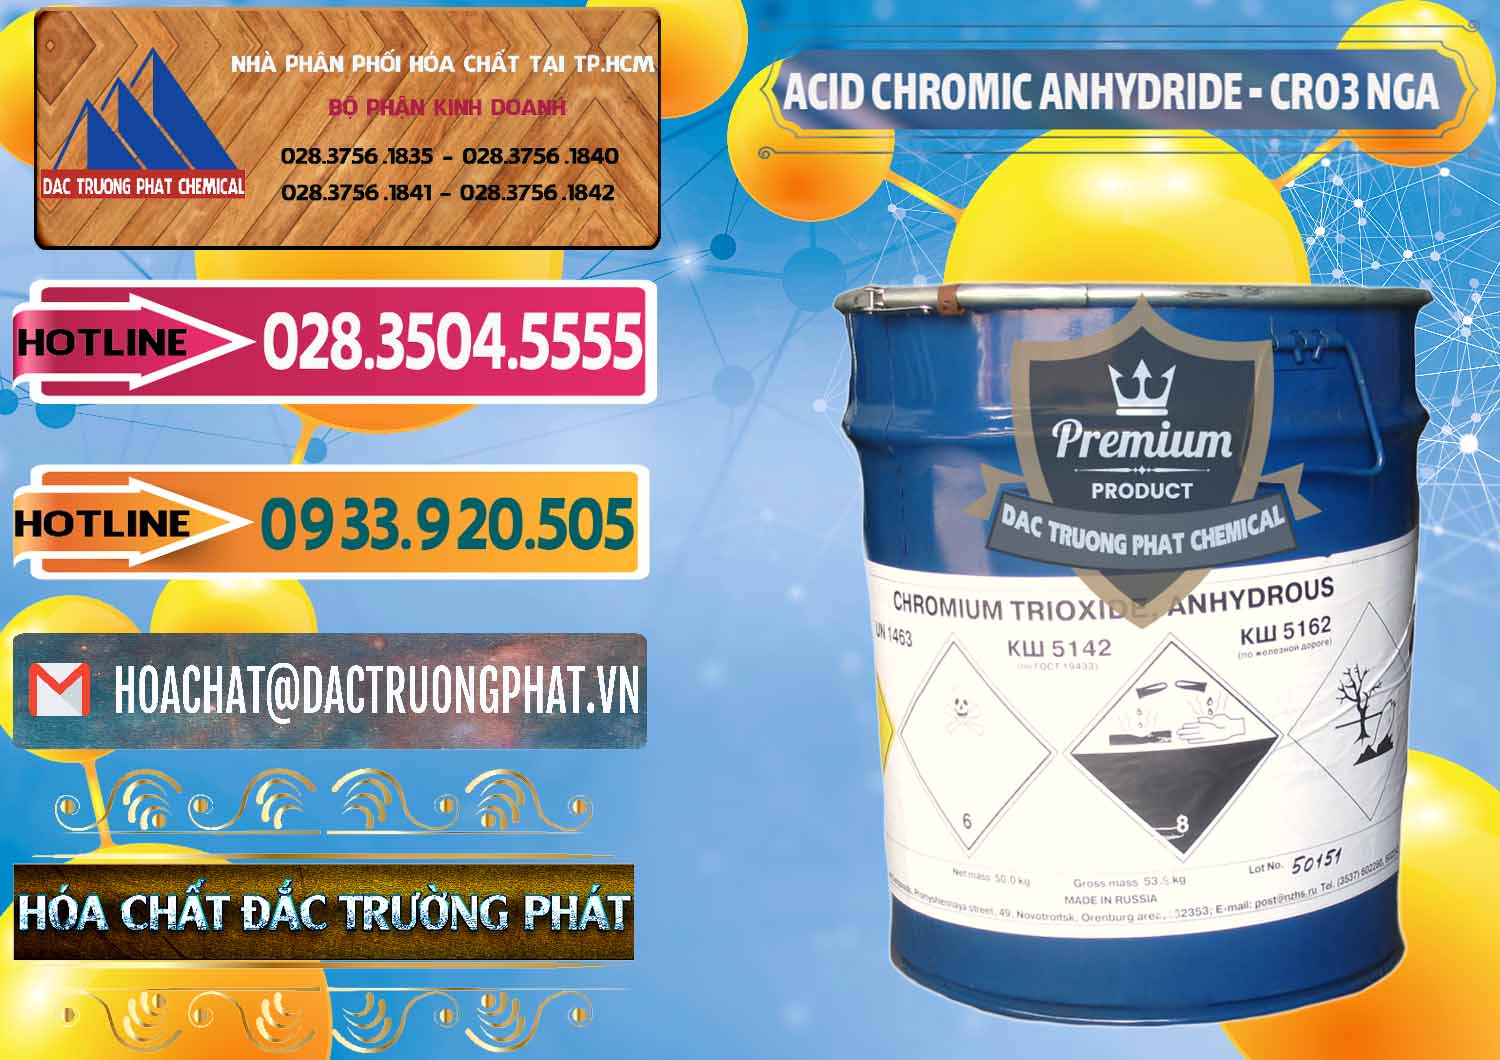 Nhập khẩu & bán Acid Chromic Anhydride - Cromic CRO3 Nga Russia - 0006 - Nơi cung cấp _ phân phối hóa chất tại TP.HCM - dactruongphat.vn